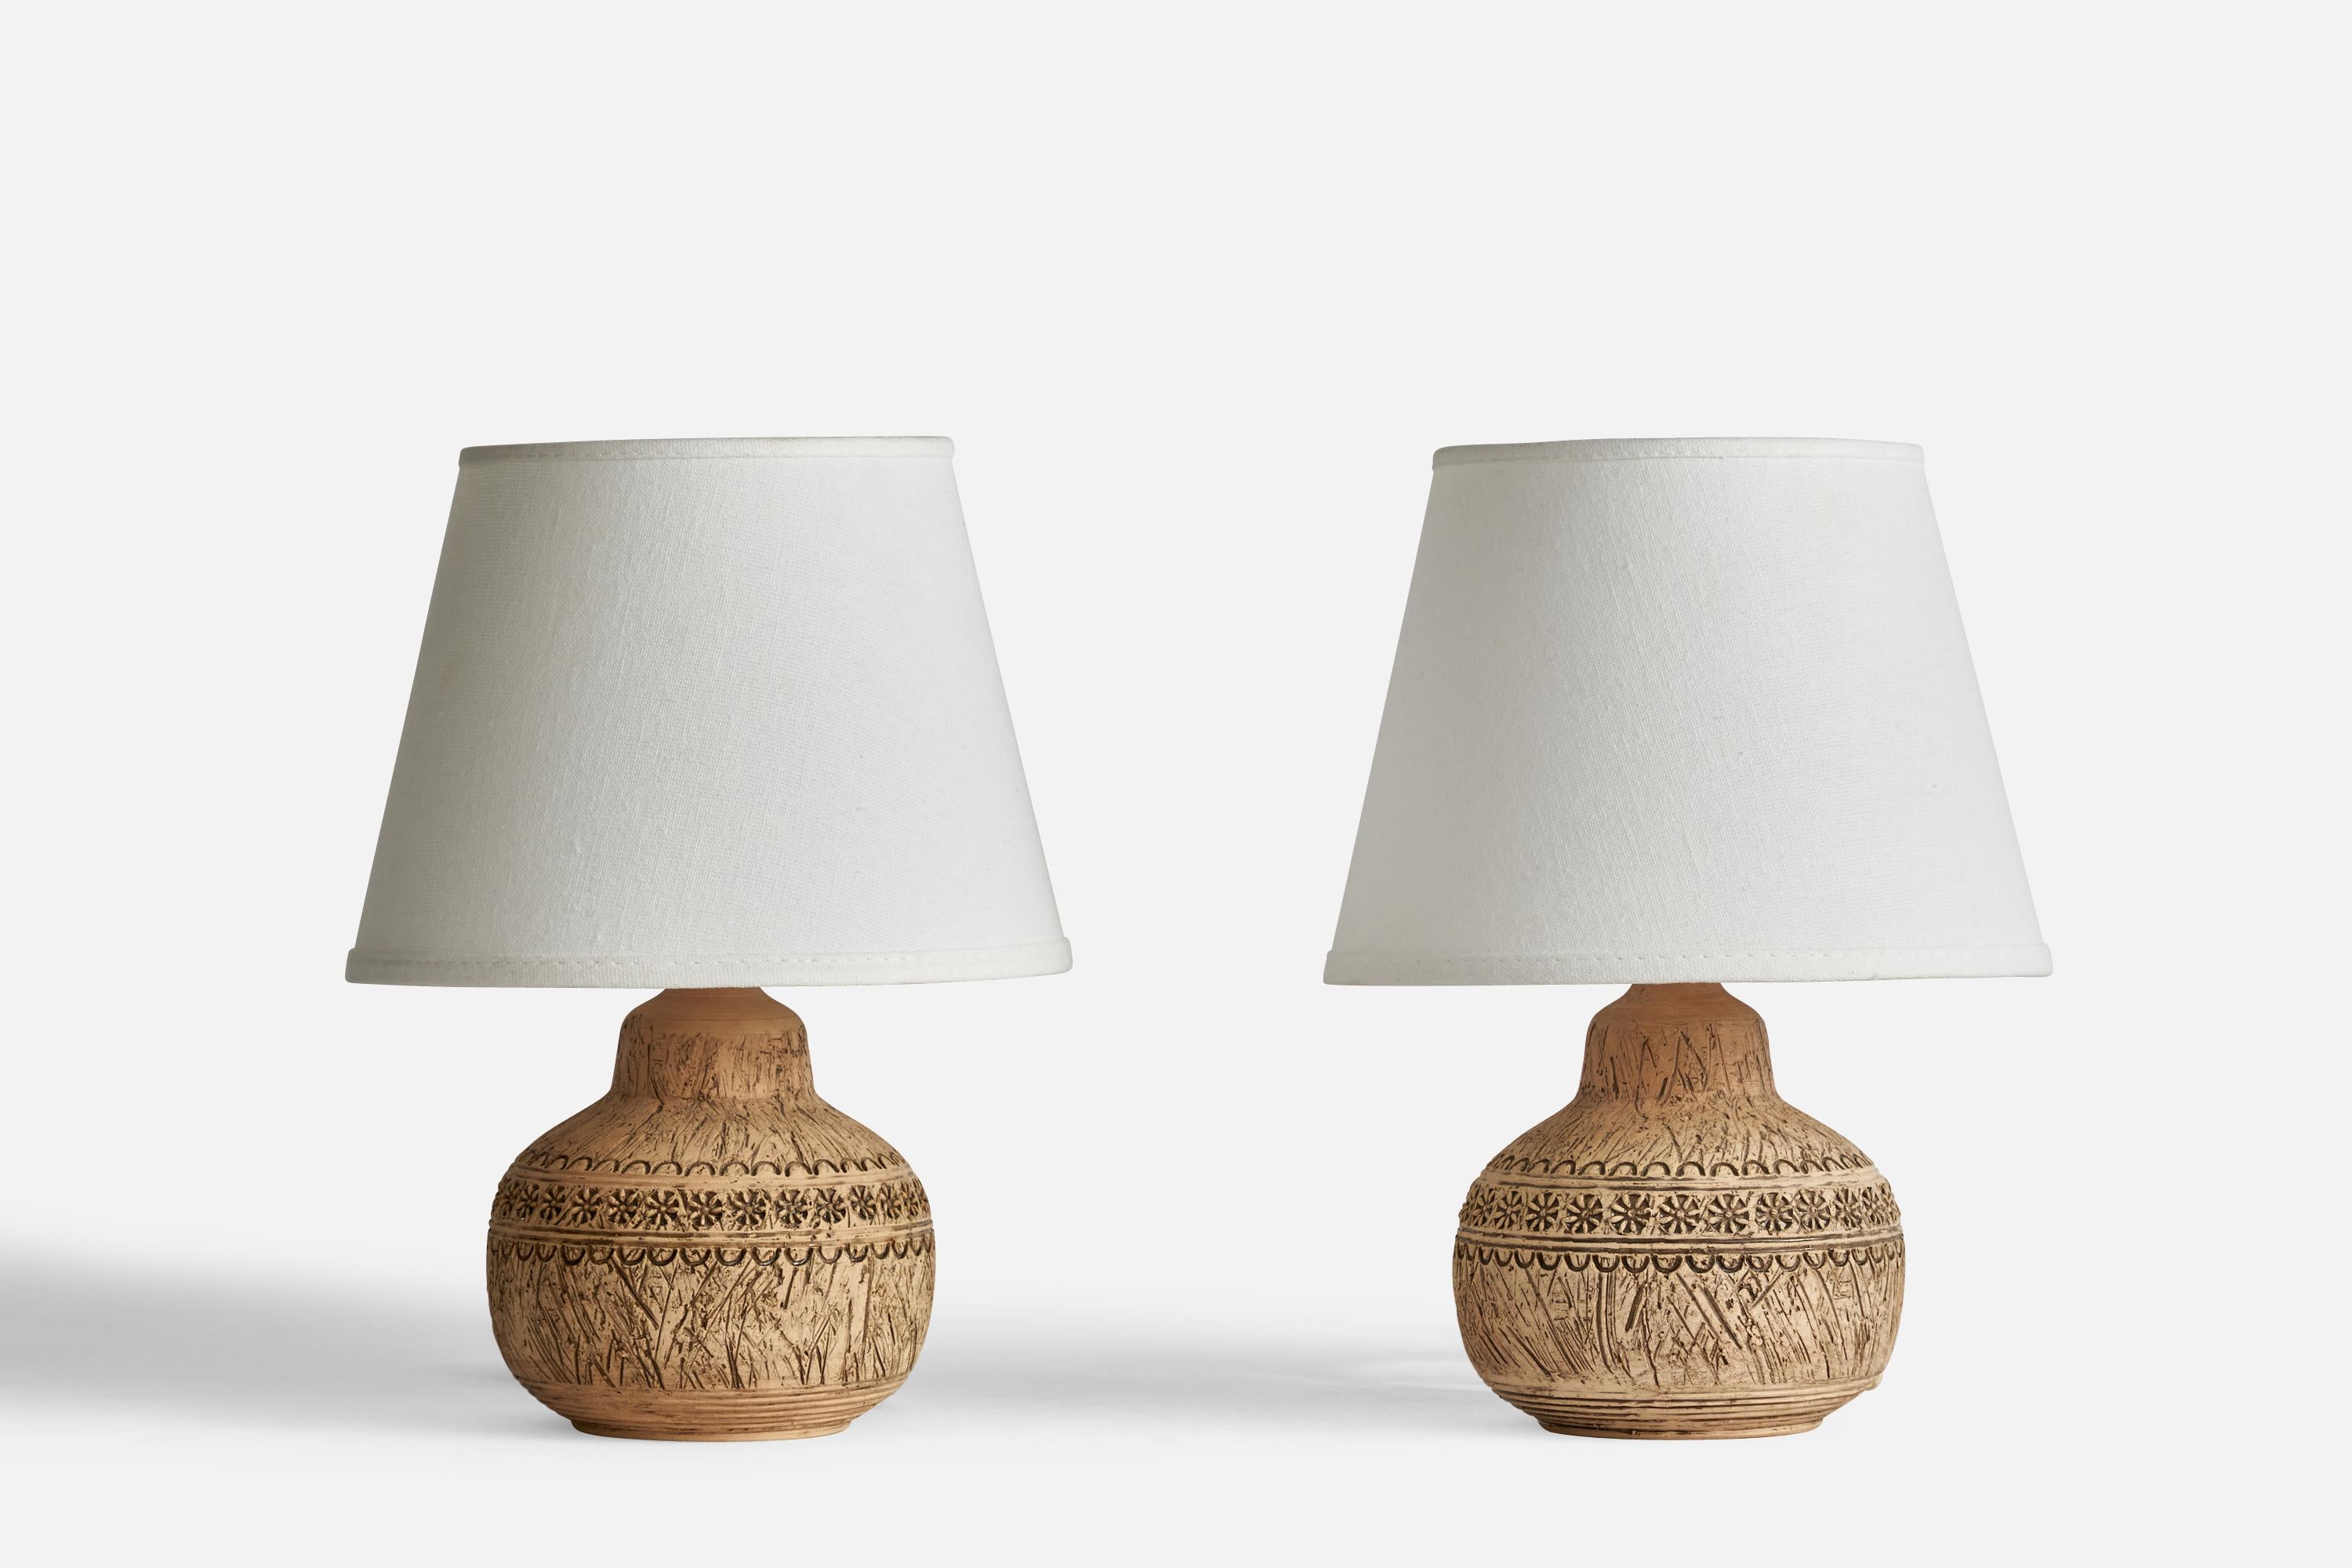 Ein Paar Tischlampen, entworfen und hergestellt von Keramik Olle, Gränna, Schweden, ca. 1960er Jahre.

Abmessungen der Lampe (Zoll): 7,25